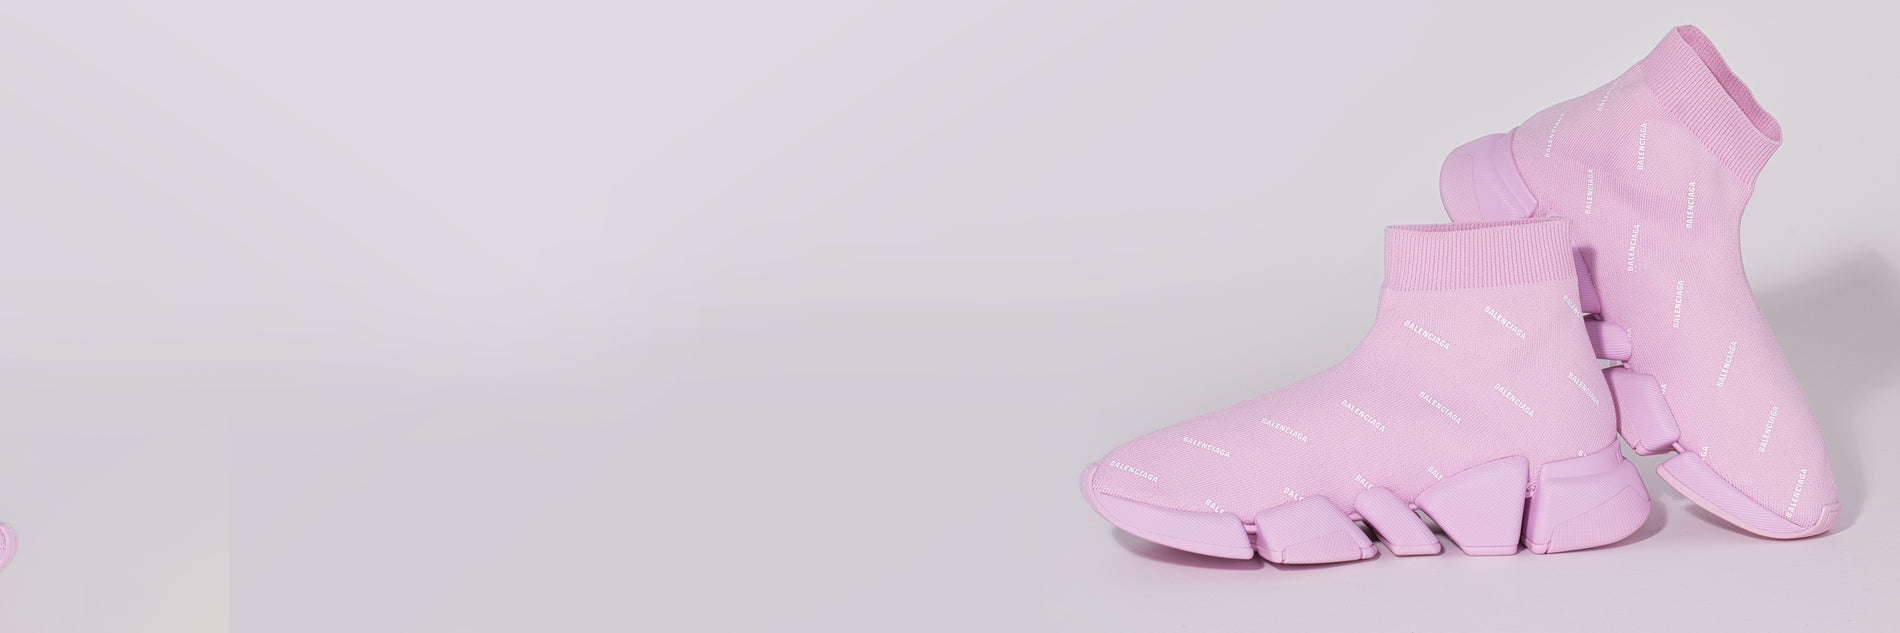 Pink Balenciaga sock shoes